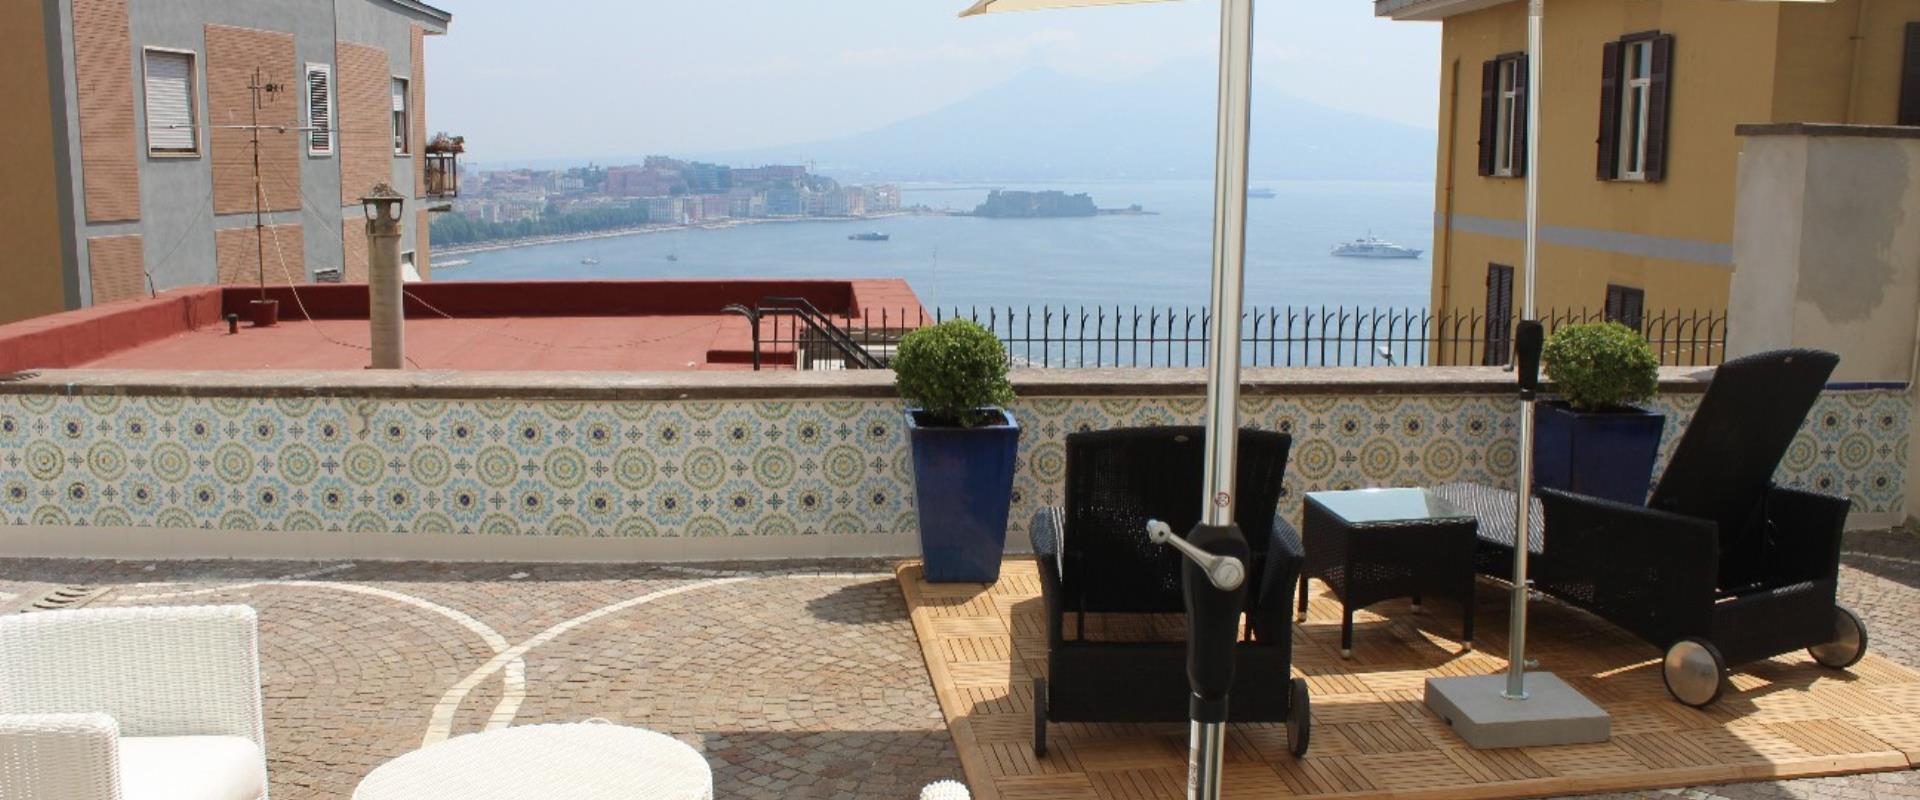 Découvrez la vue magnifique sur le golfe de Naples que l'on peut admirer de l'hôtel Paradise !